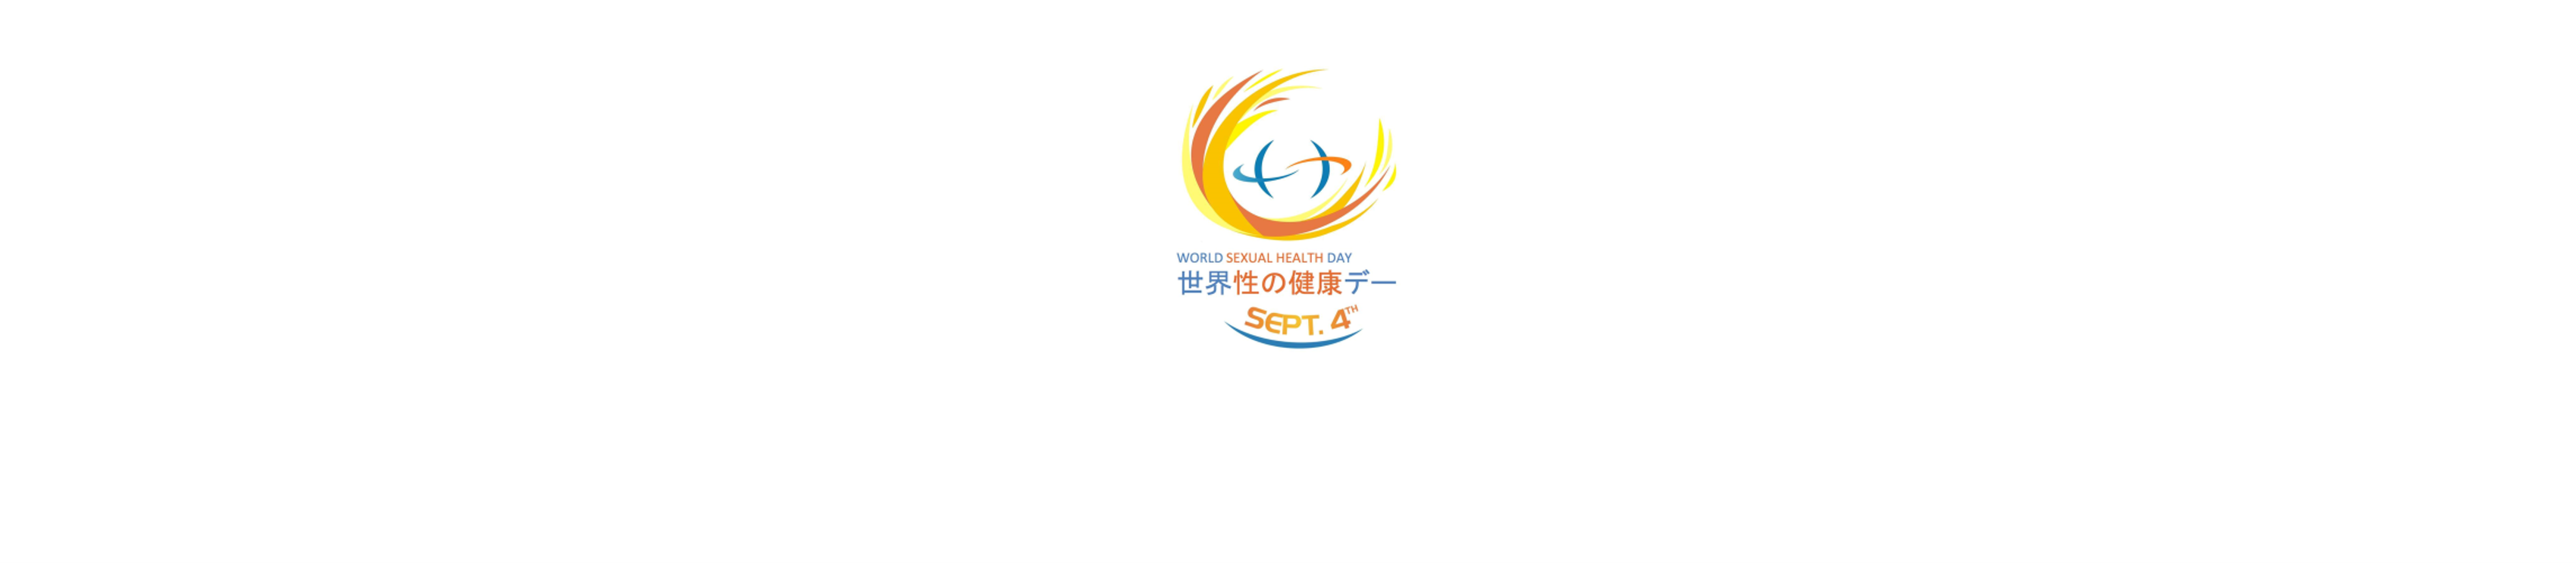 WSHD_logo